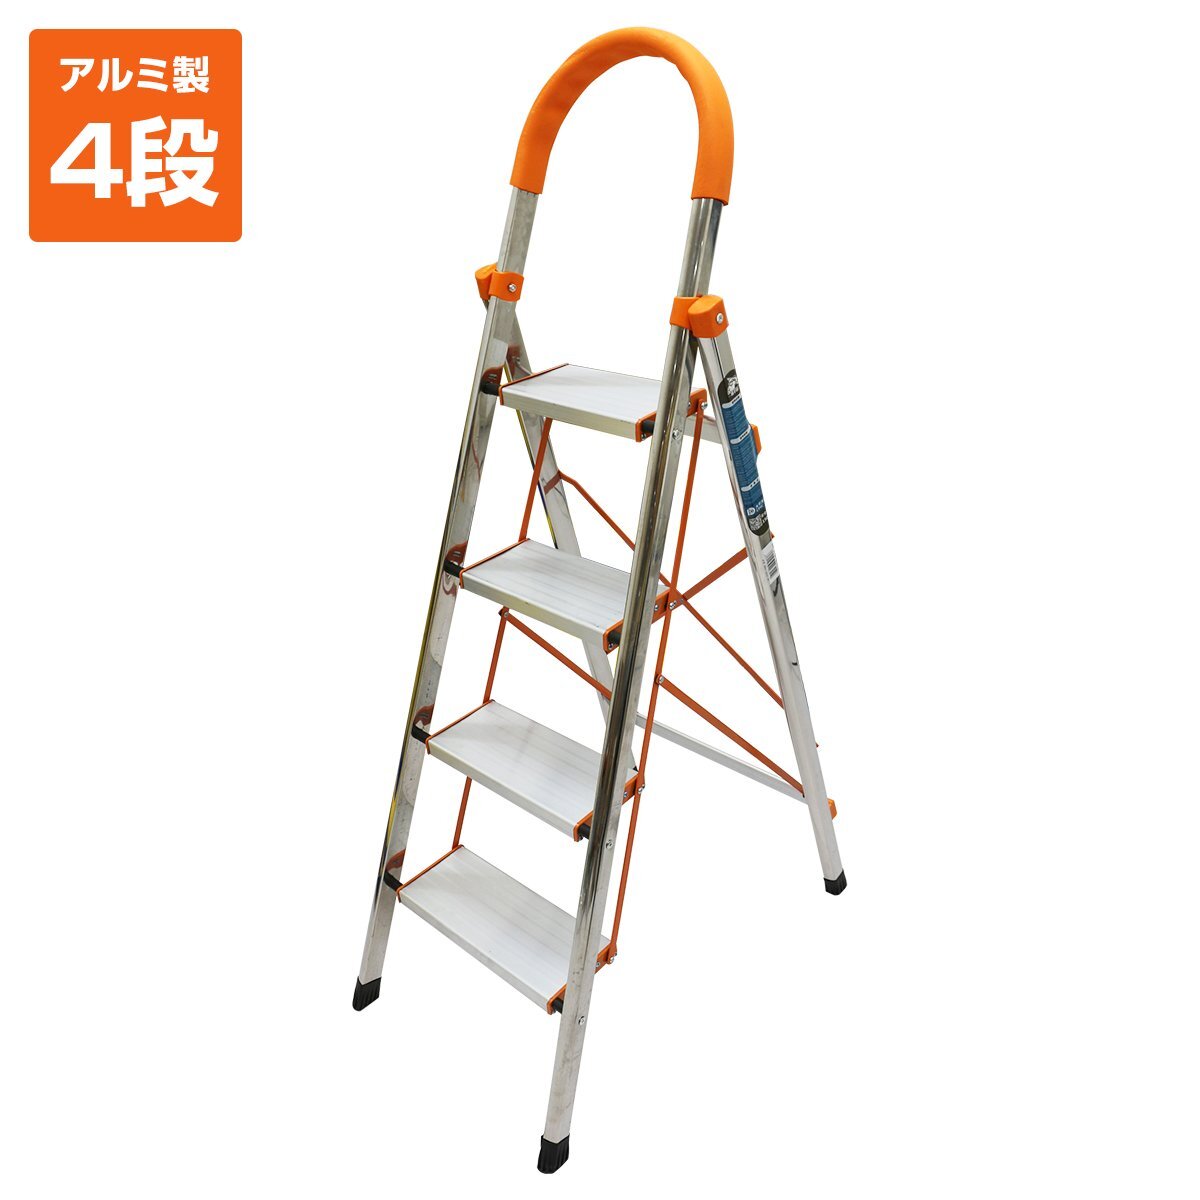 【新品即納】軽量設計♪ 持ち運びも楽々！ 梯子 4段アルミステップラダー 脚立 折りたたみ式 踏み台